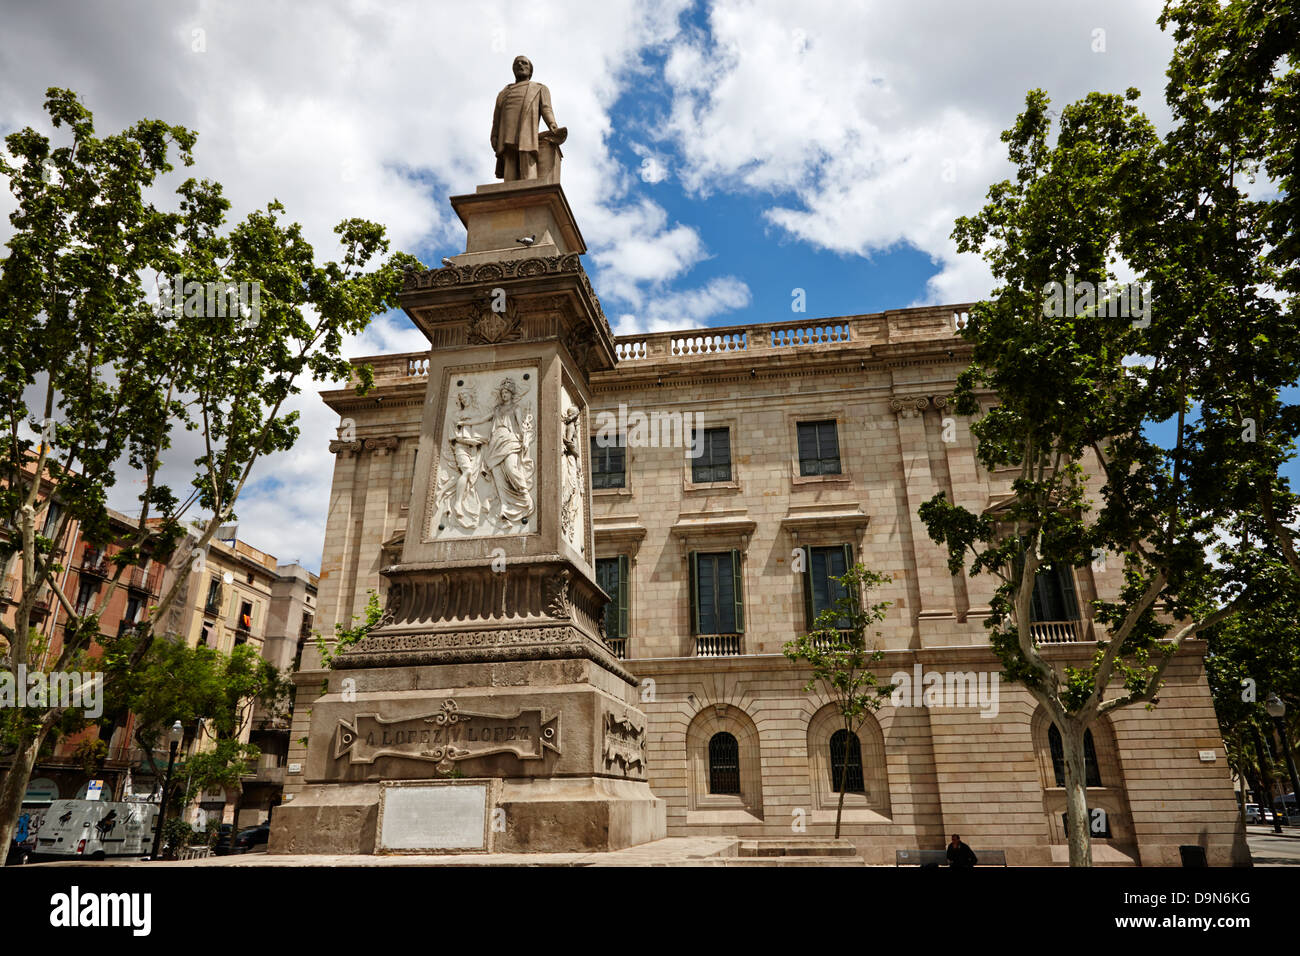 palau de la llotja palace former stock exchange and antonio lopez y lopez memorial barcelona catalonia spain Stock Photo